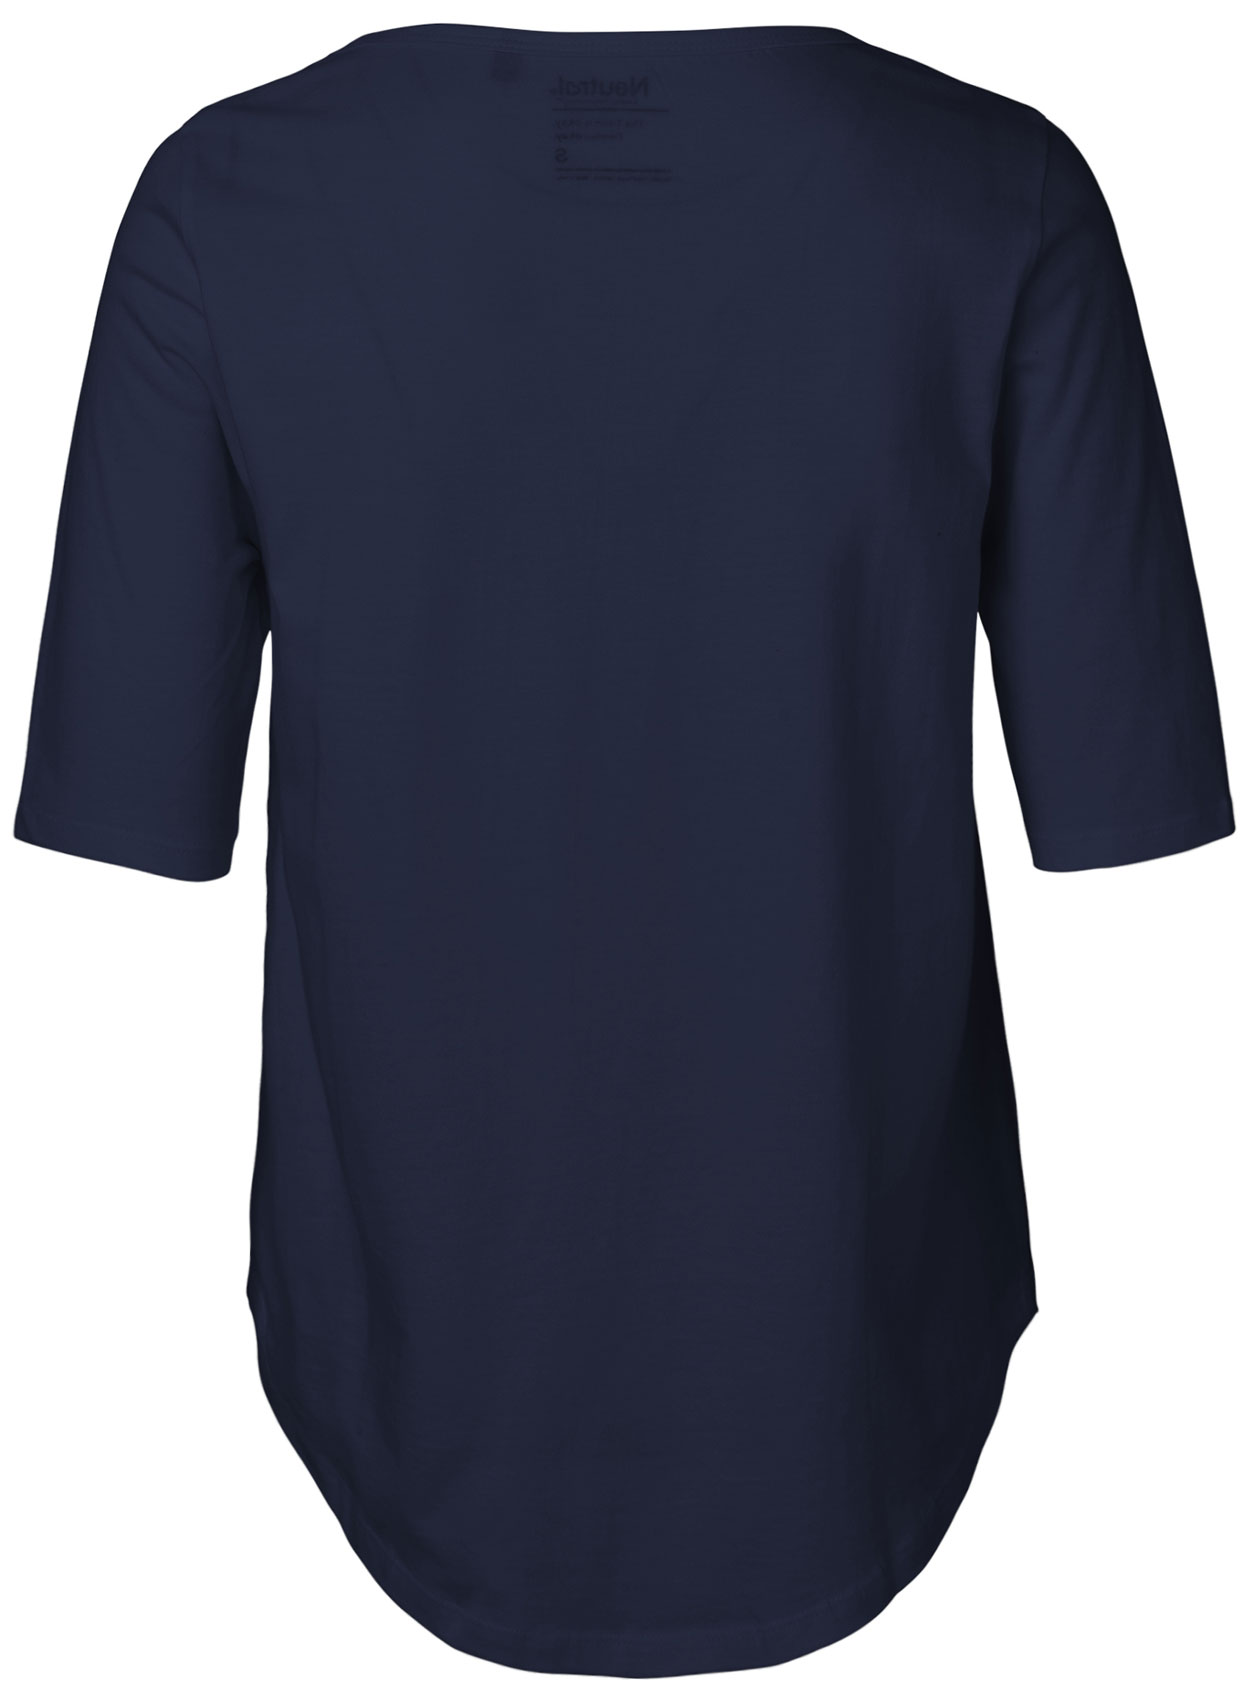 Legeres T-Shirt mit halblangen Ärmeln - Bio-Baumwolle